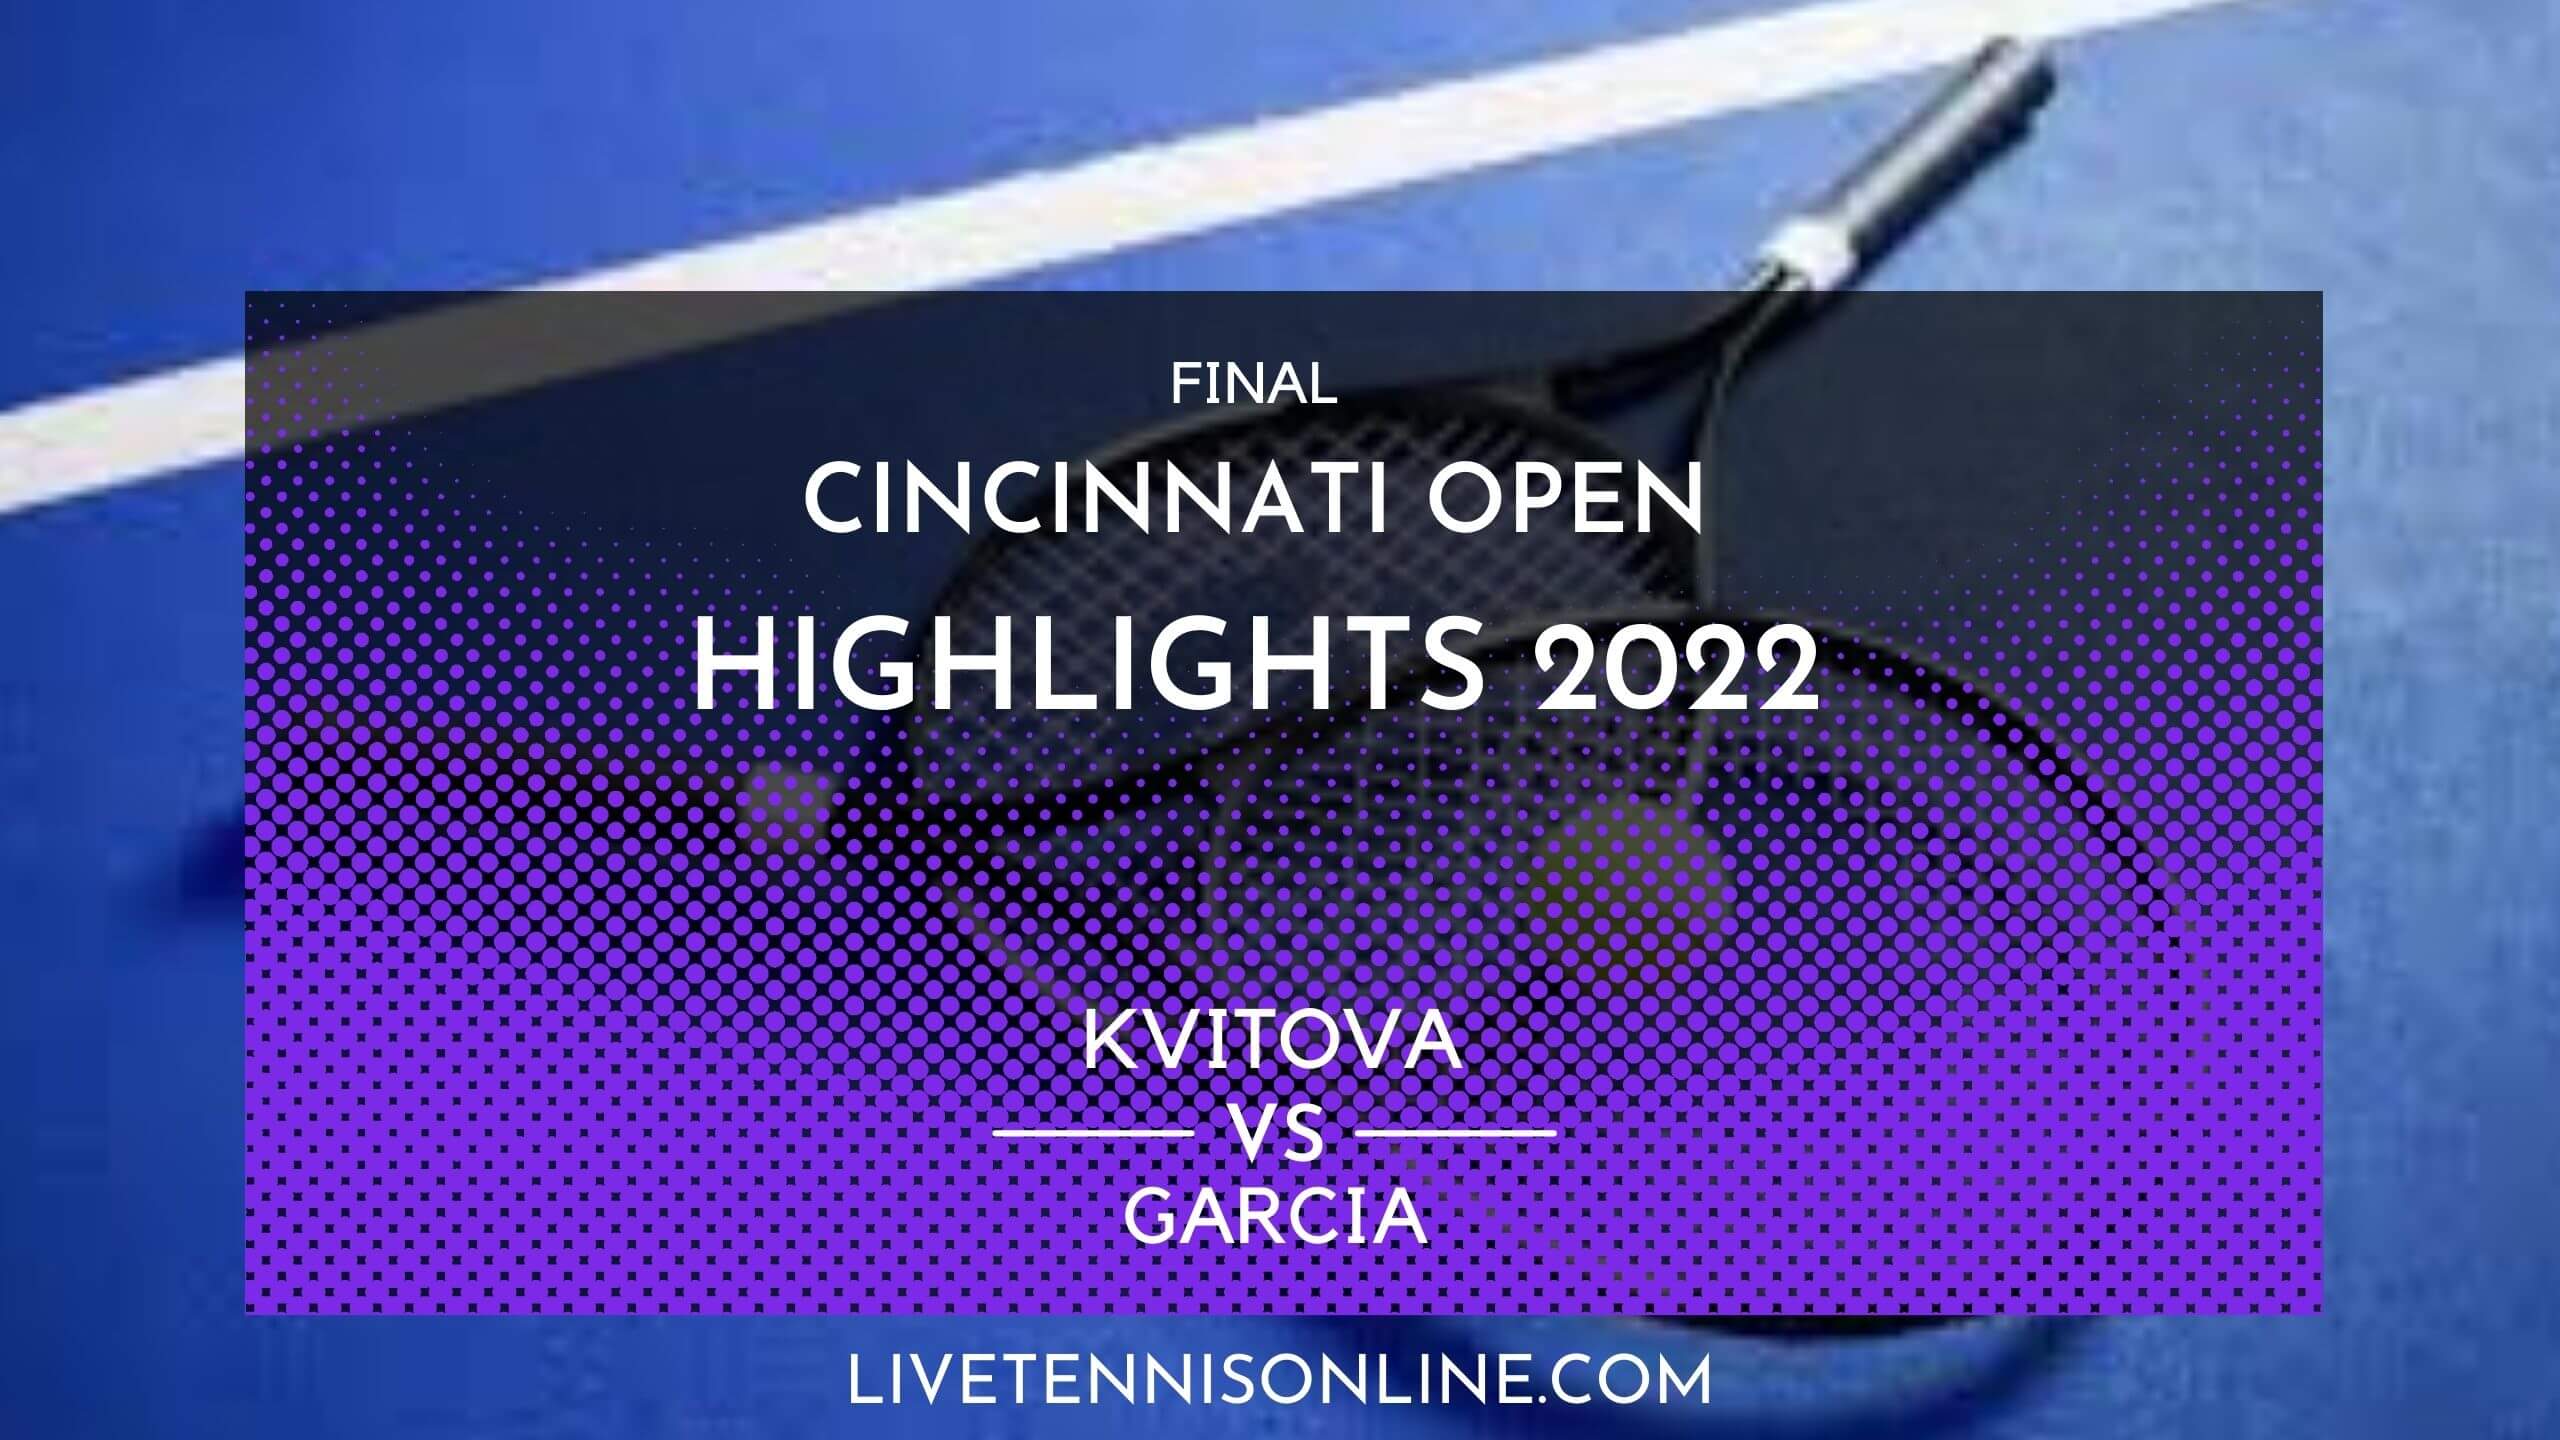 Kvitova Vs Garcia Final Highlights 2022 Cincinnati Open